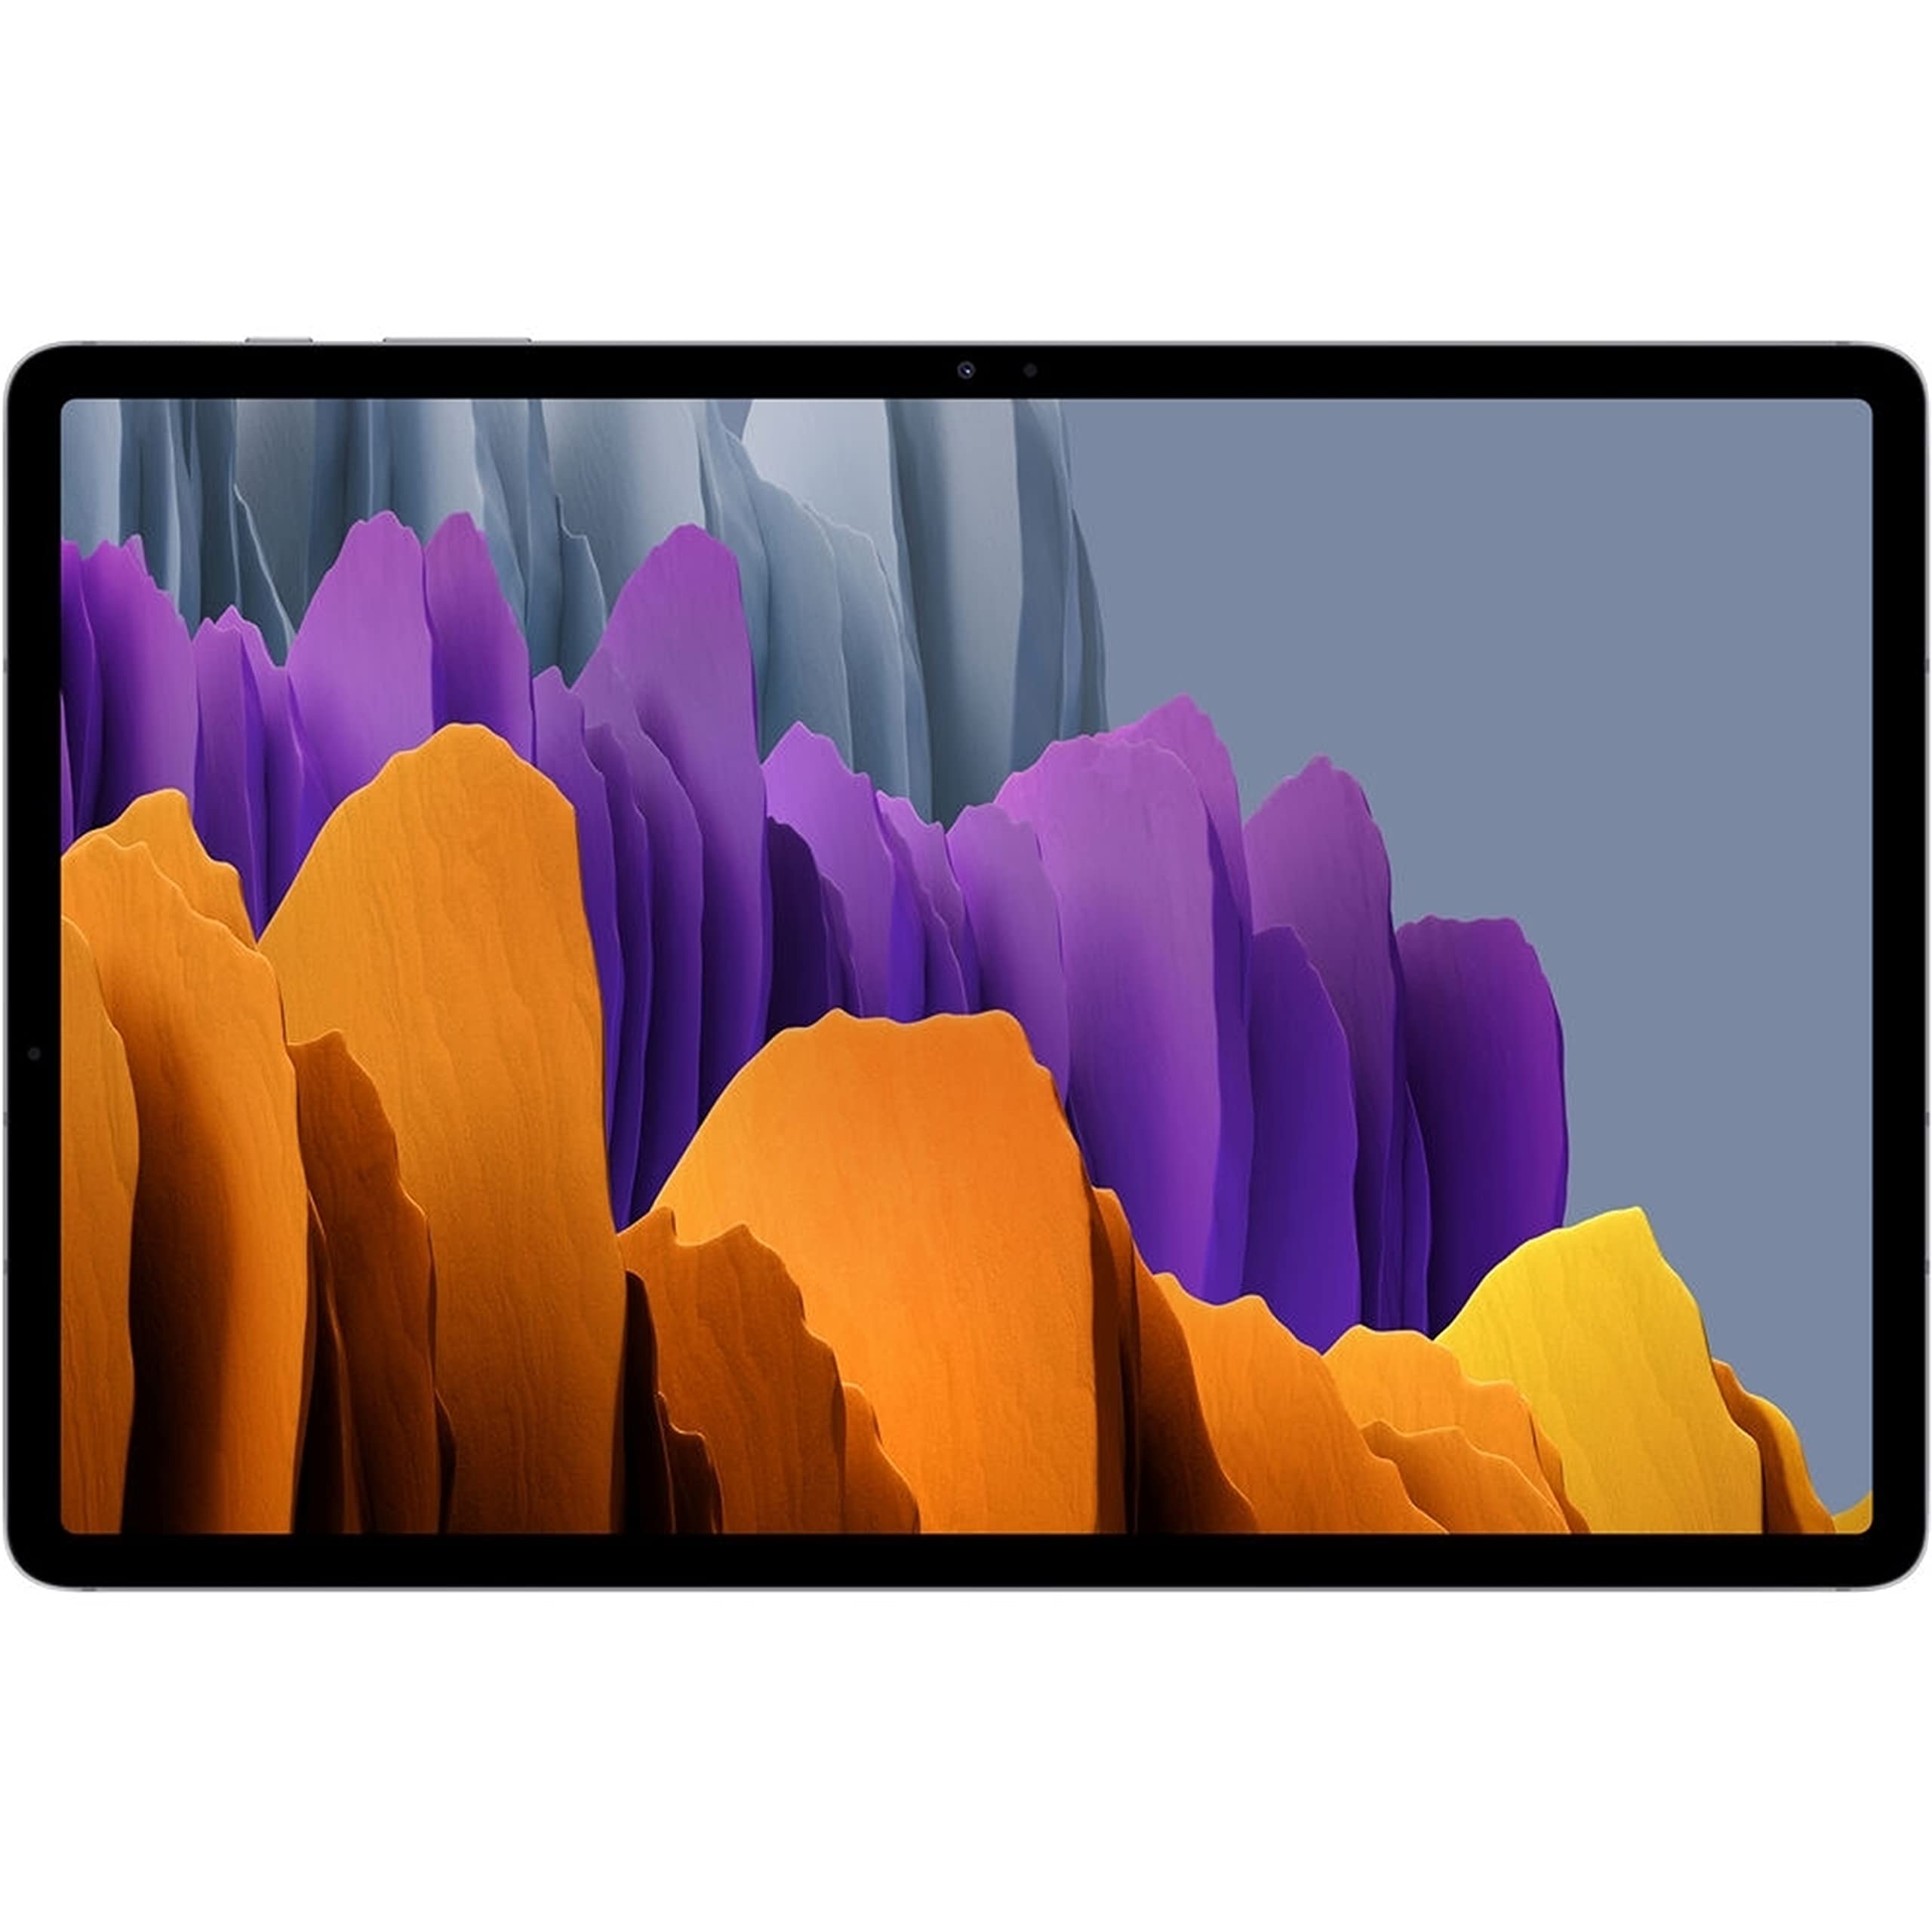 SAMSUNG Galaxy Tab S7+ 12.4" Tablet 128GB WiFi Snapdragon 865 Plus 3.09GHz, Mystic Silver (Renewed)